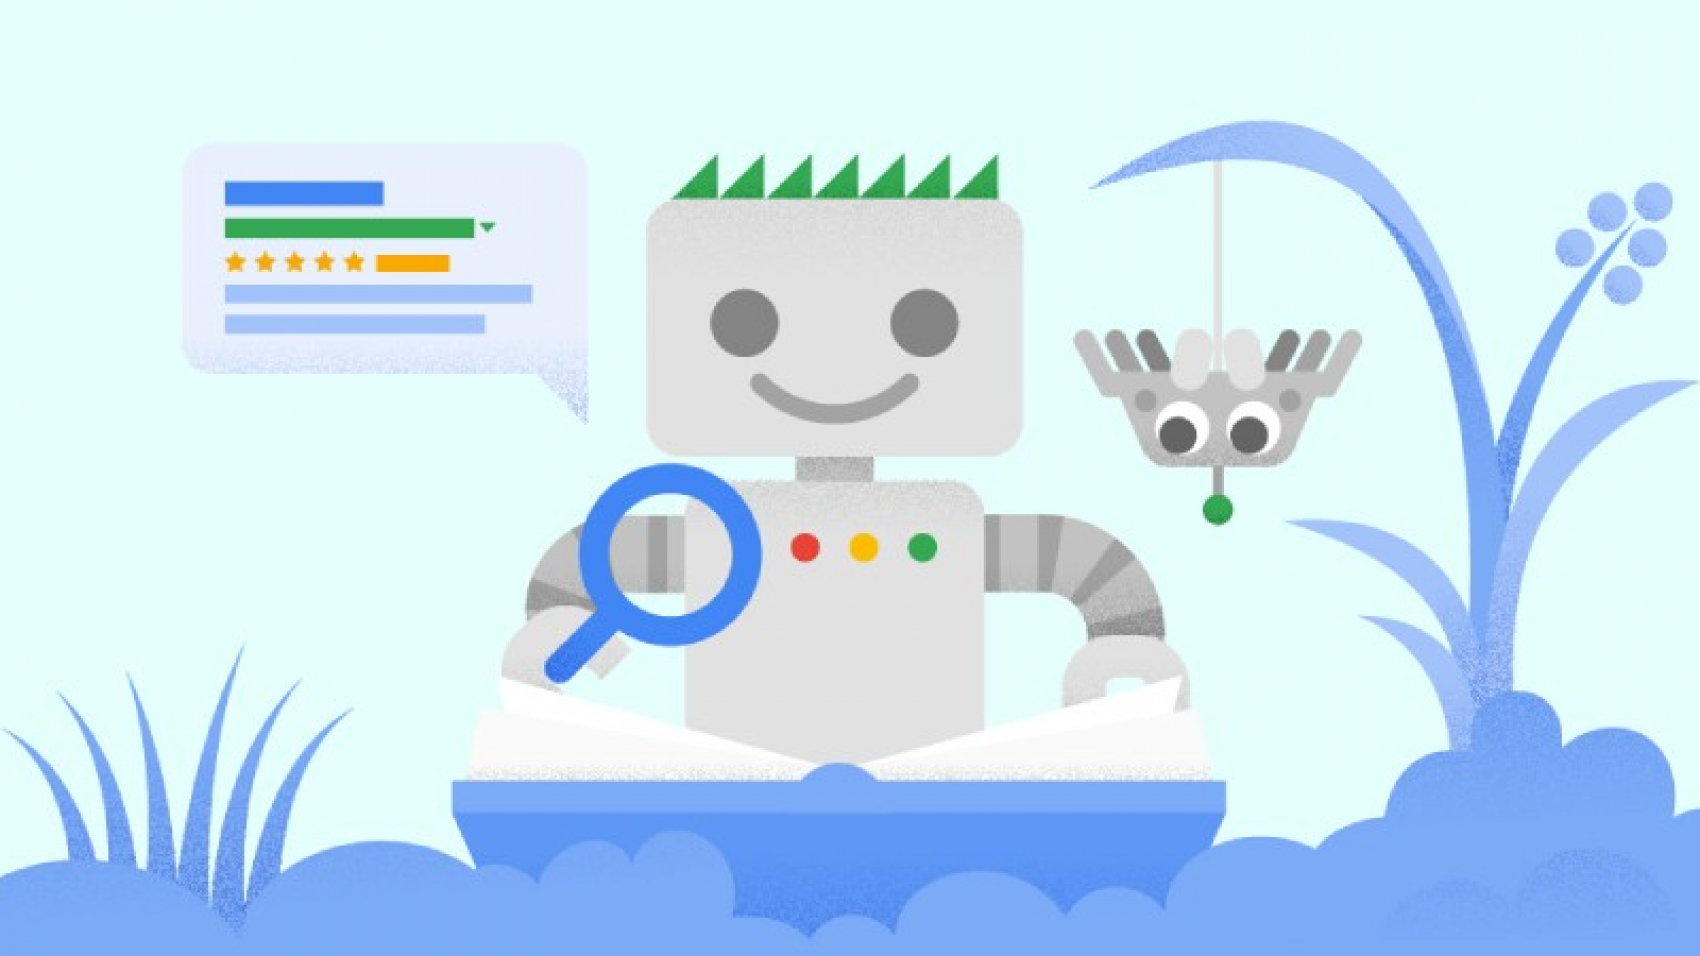 Чек-лист от Google: как оптимизировать сайт?